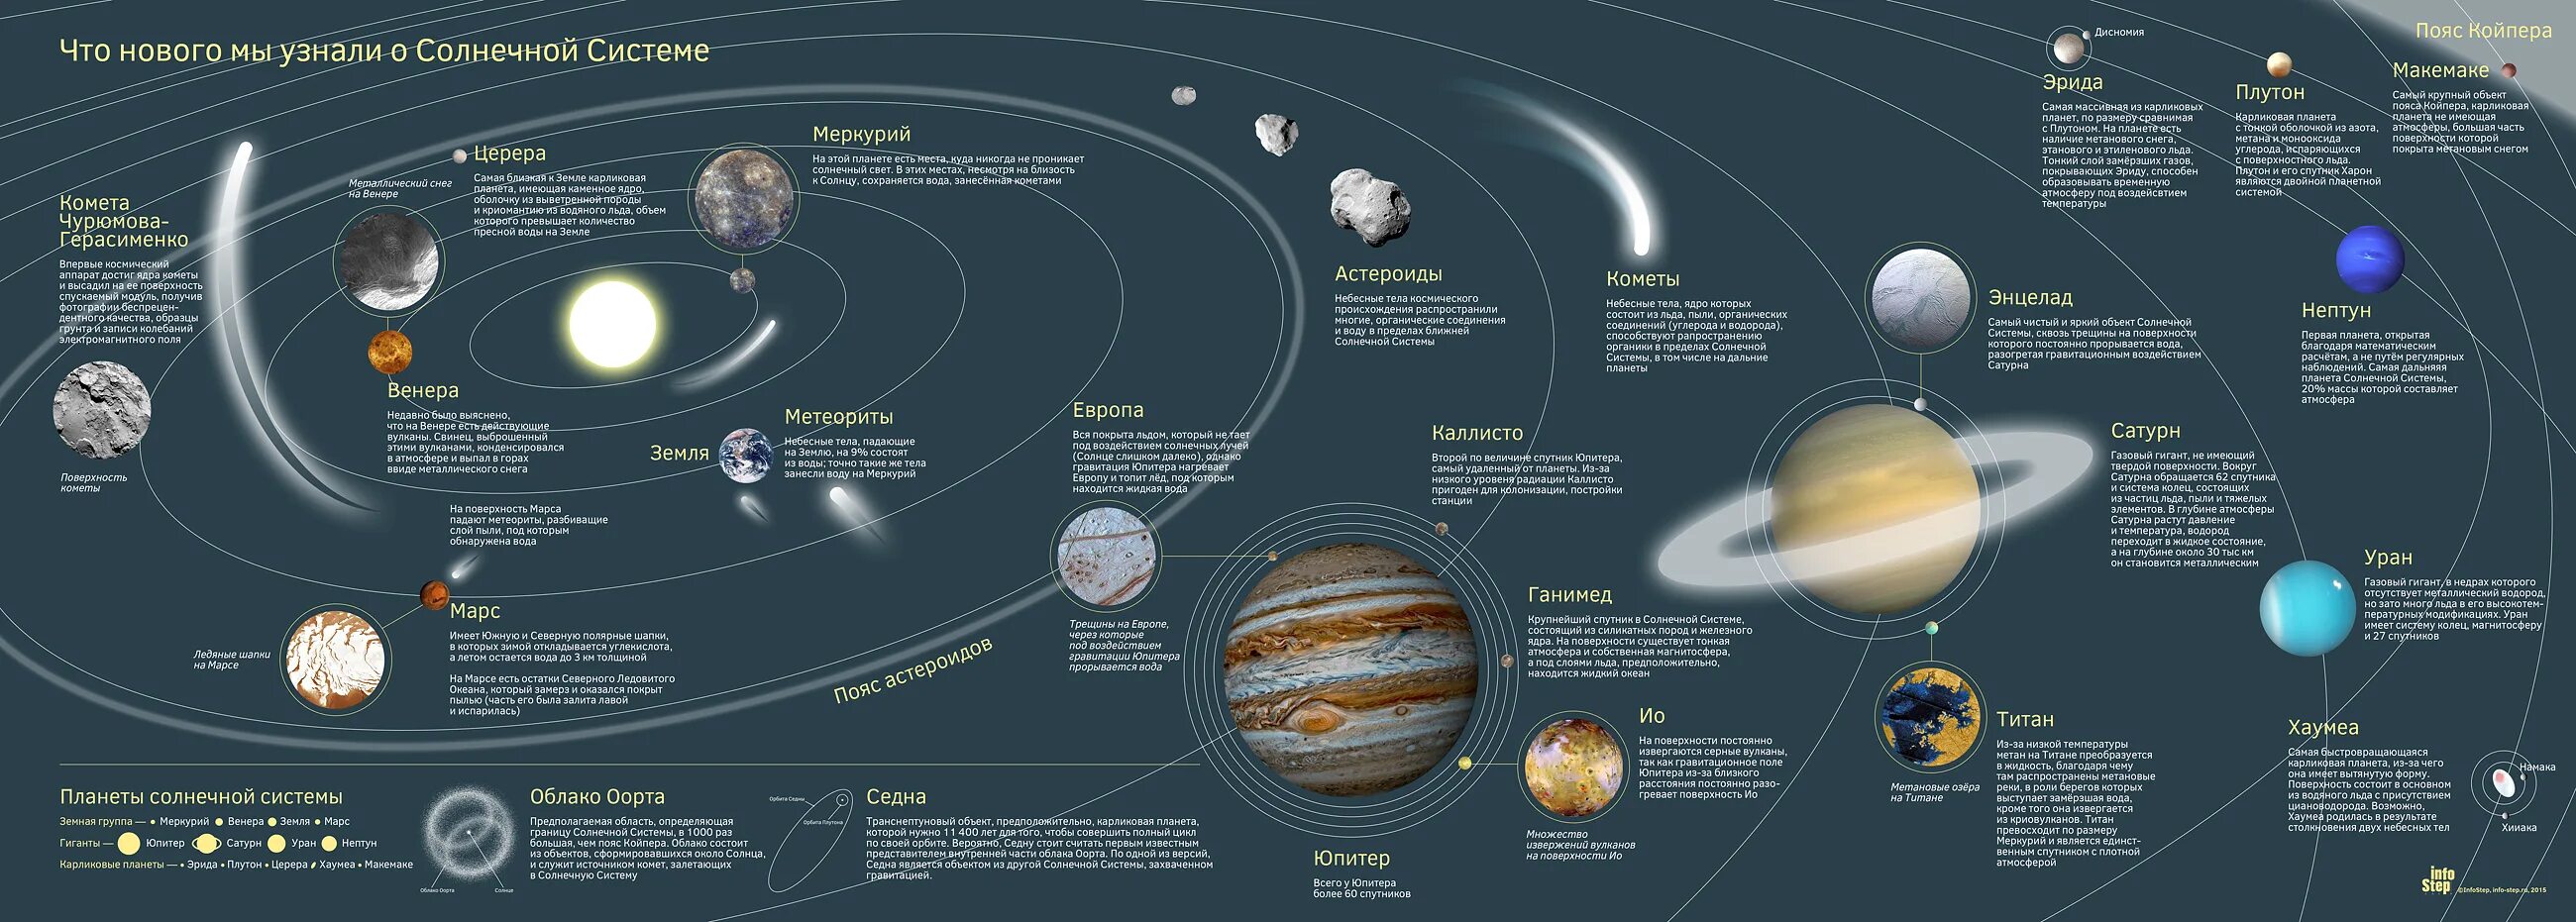 Этапы жизни планеты. Солнечная система планеты по порядку от солнца со спутниками. Вся Солнечная система с карликовыми планетами и спутниками кометами. Солнечная система это планеты солнечной системы со спутниками. Строение солнечной системы по порядку.